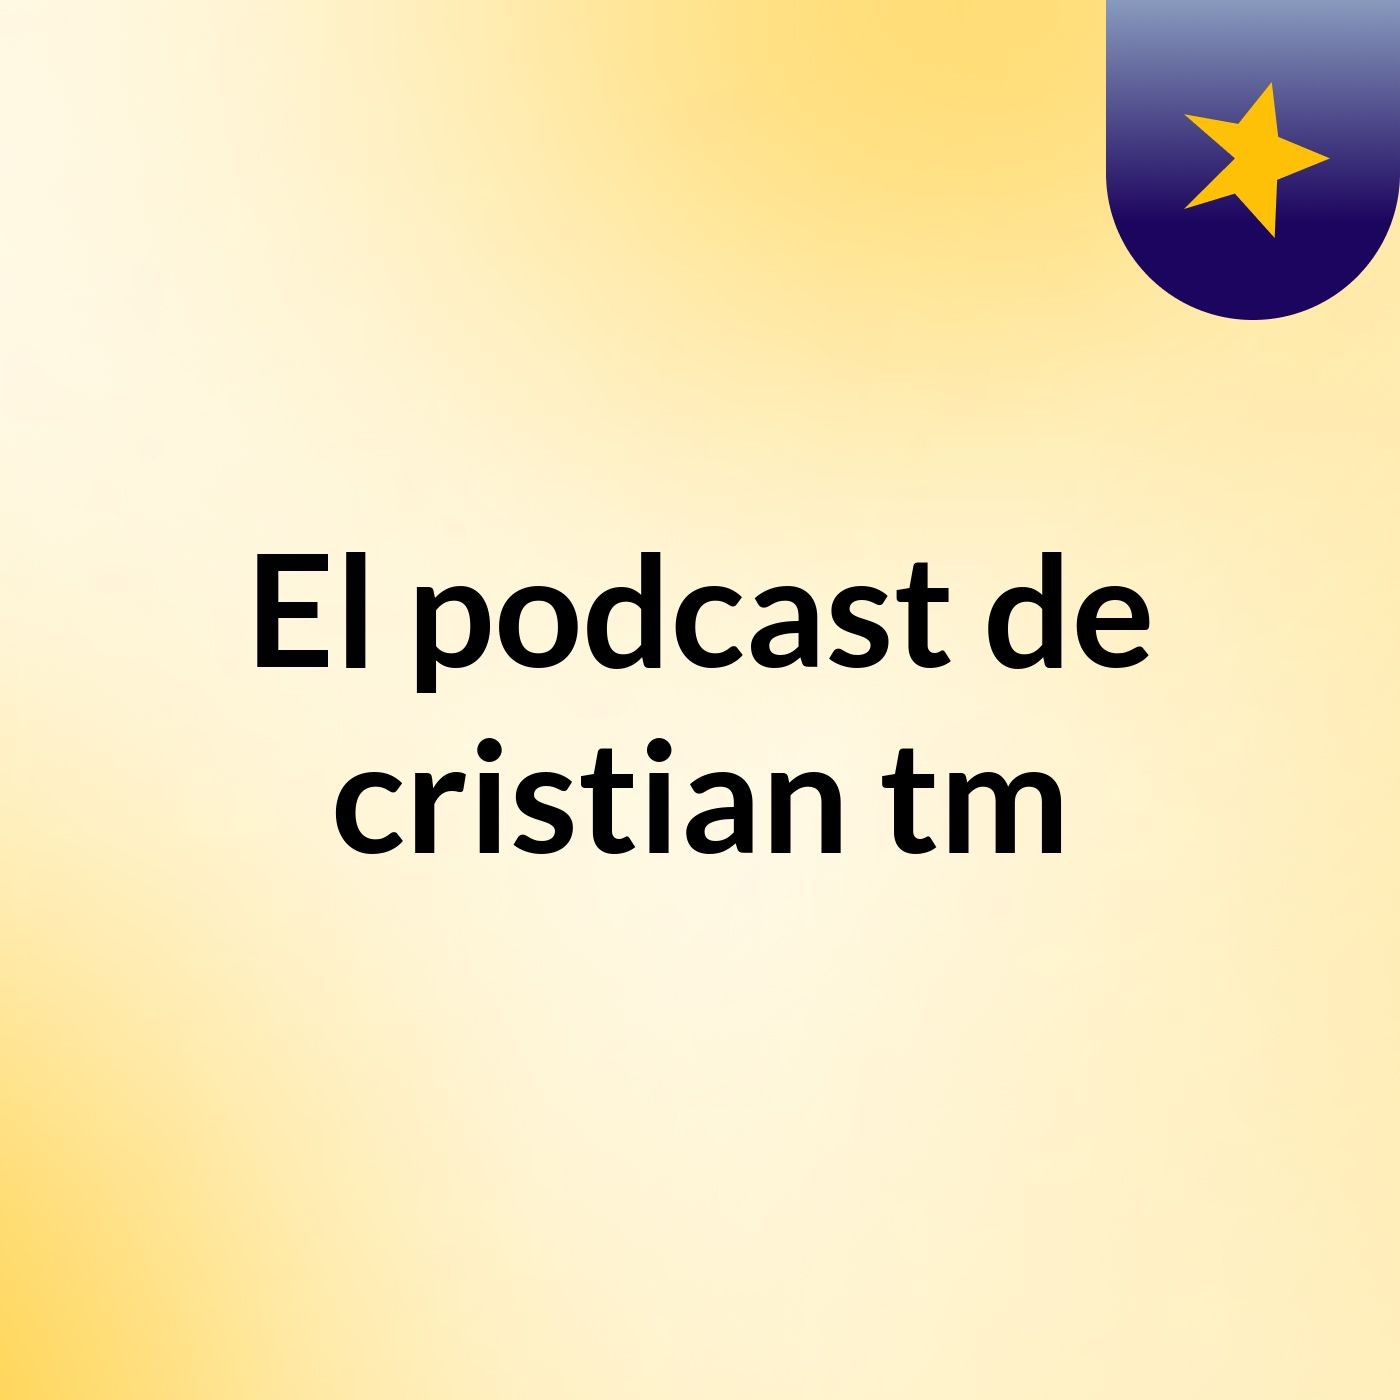 El podcast de cristian tm